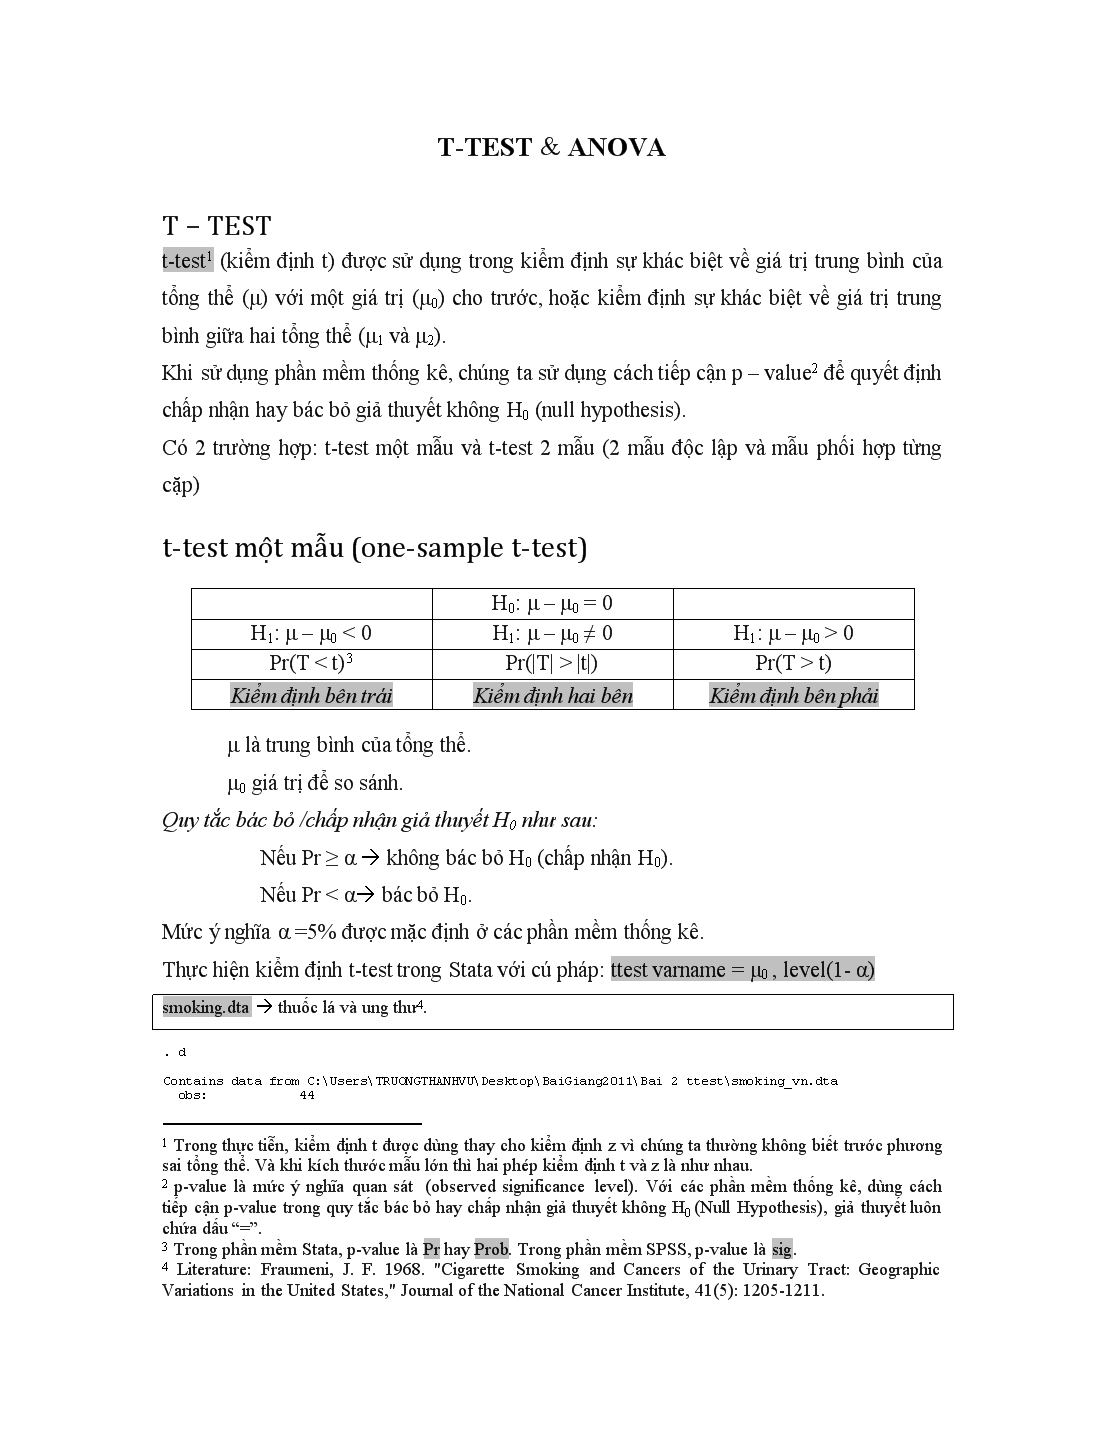 T-Test và anova trang 1